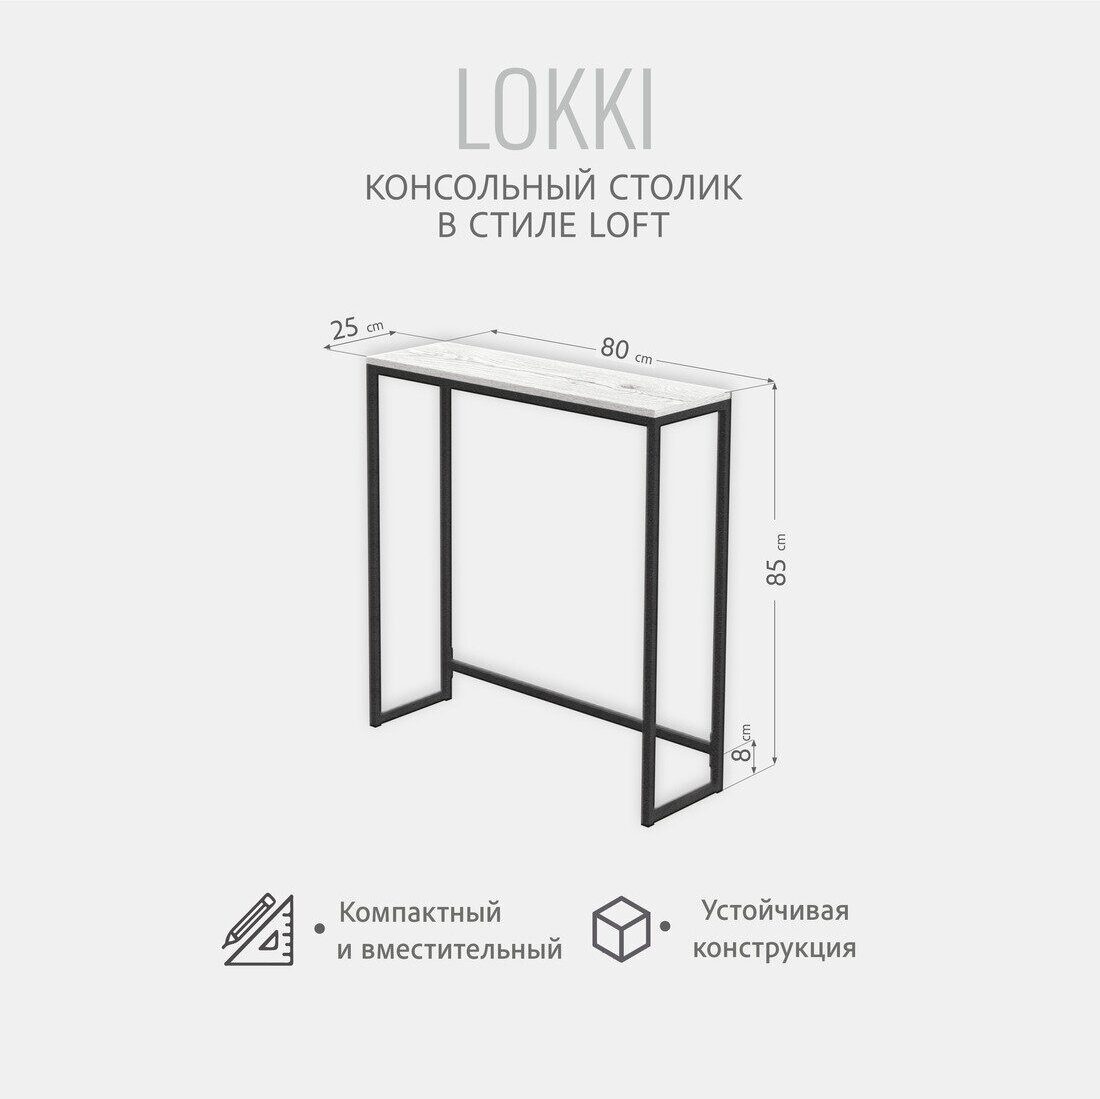 Консольный столик LOKKI loft, светло-серый, приставной, туалетный столик, металлический, деревянный, 85x80x25 см, Гростат - фотография № 3